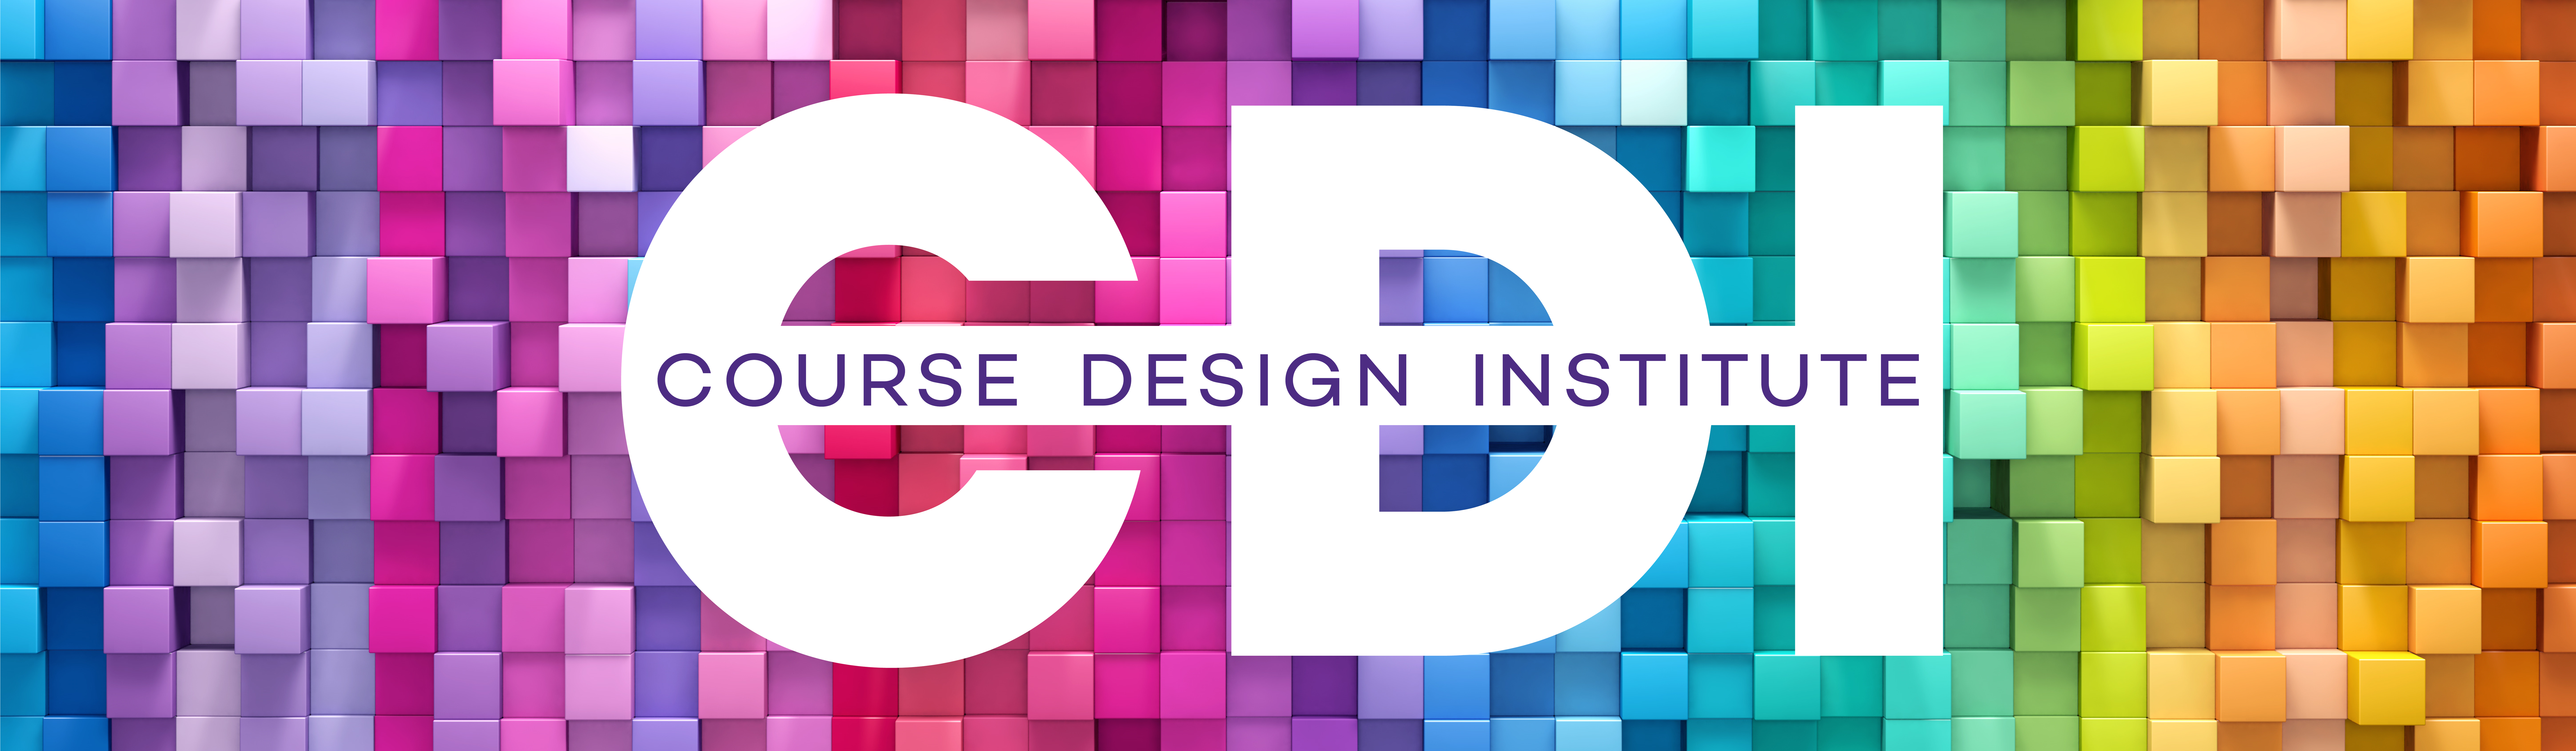 CDI logo on rainbow tile background